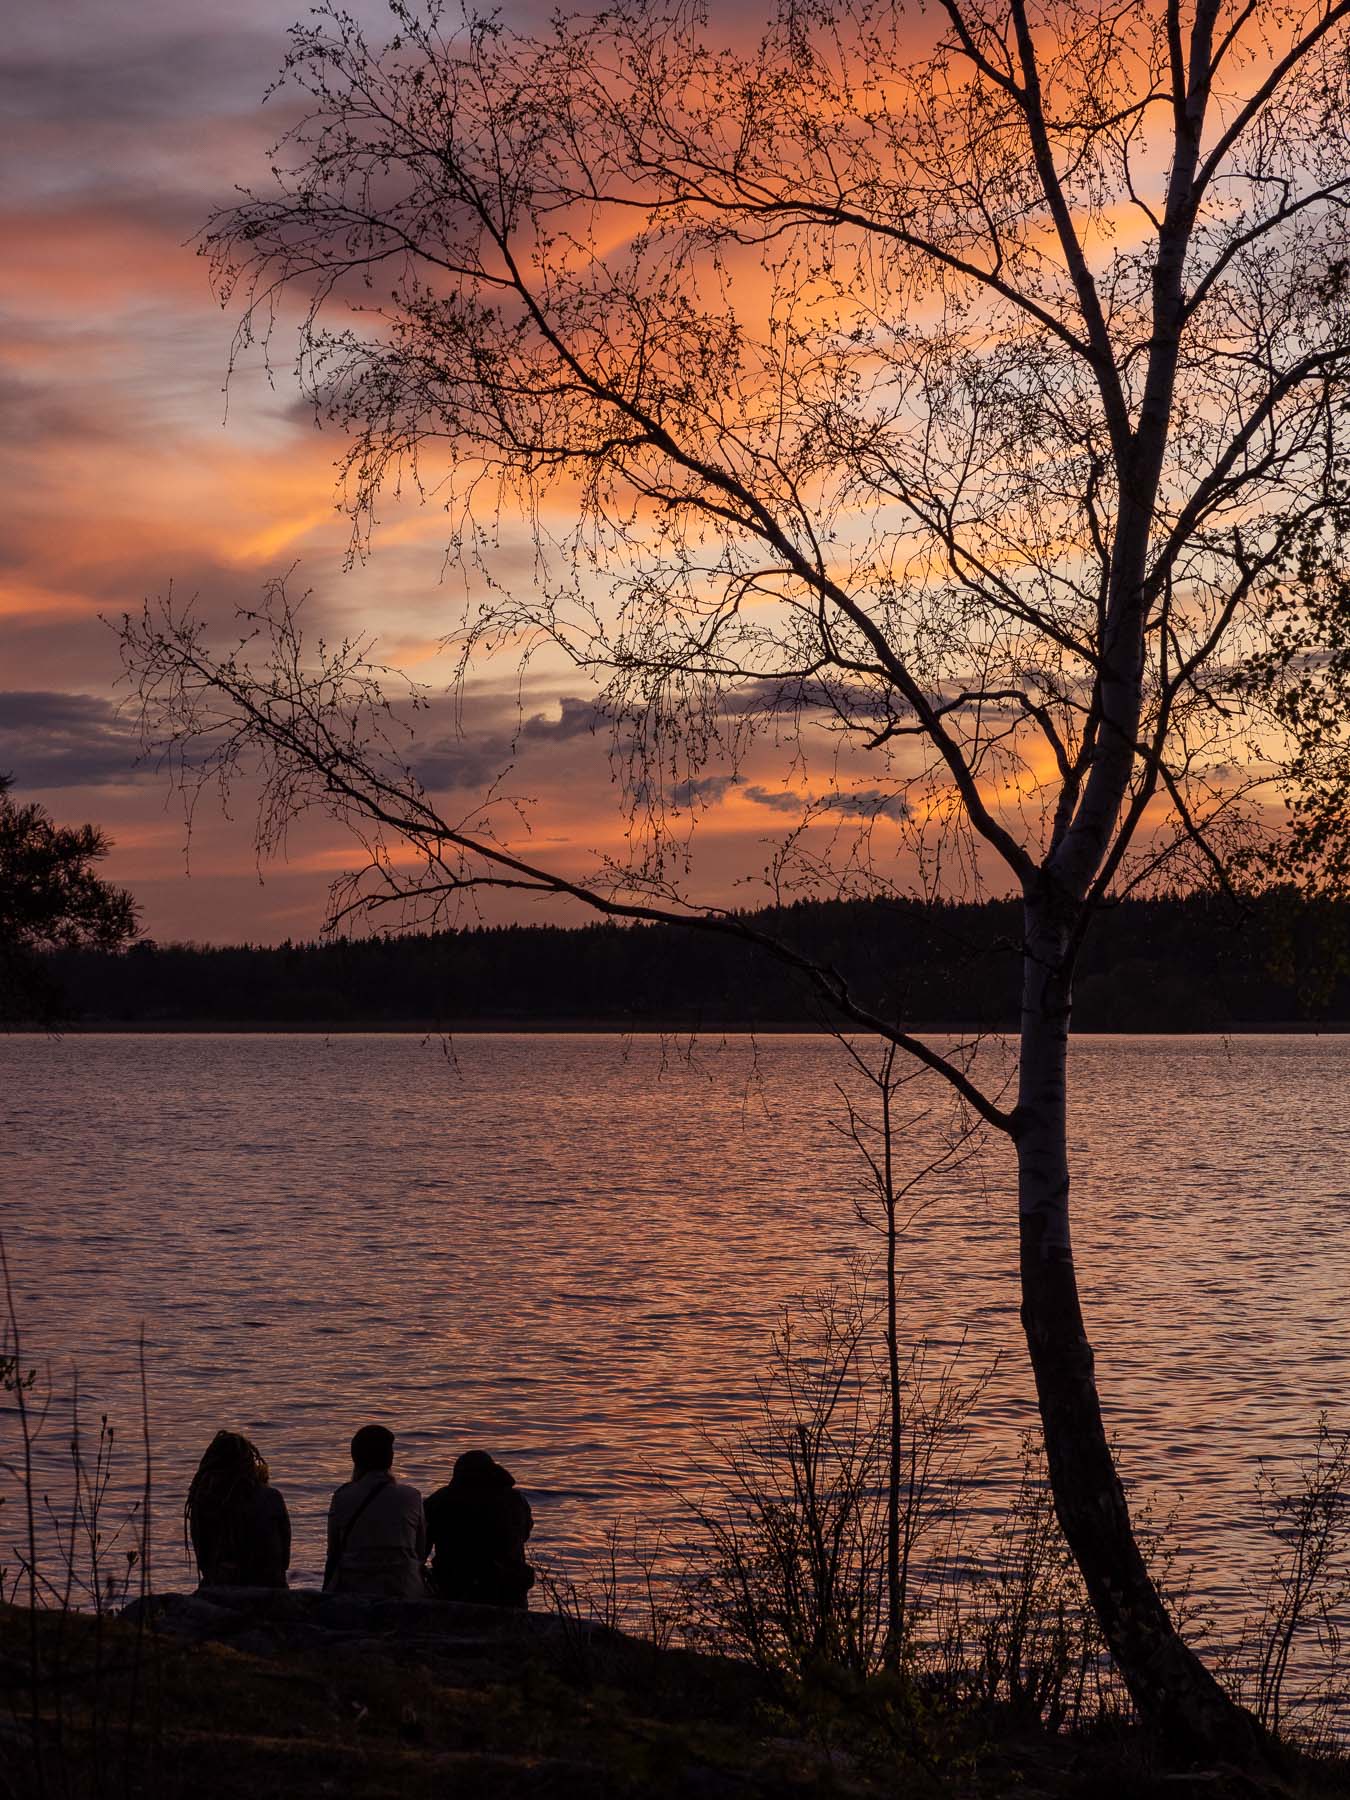 Озеро Mälaren, Стокгольм.Закат над озером M?laren, Стокгольм. Автор фото: Сутормина Марина